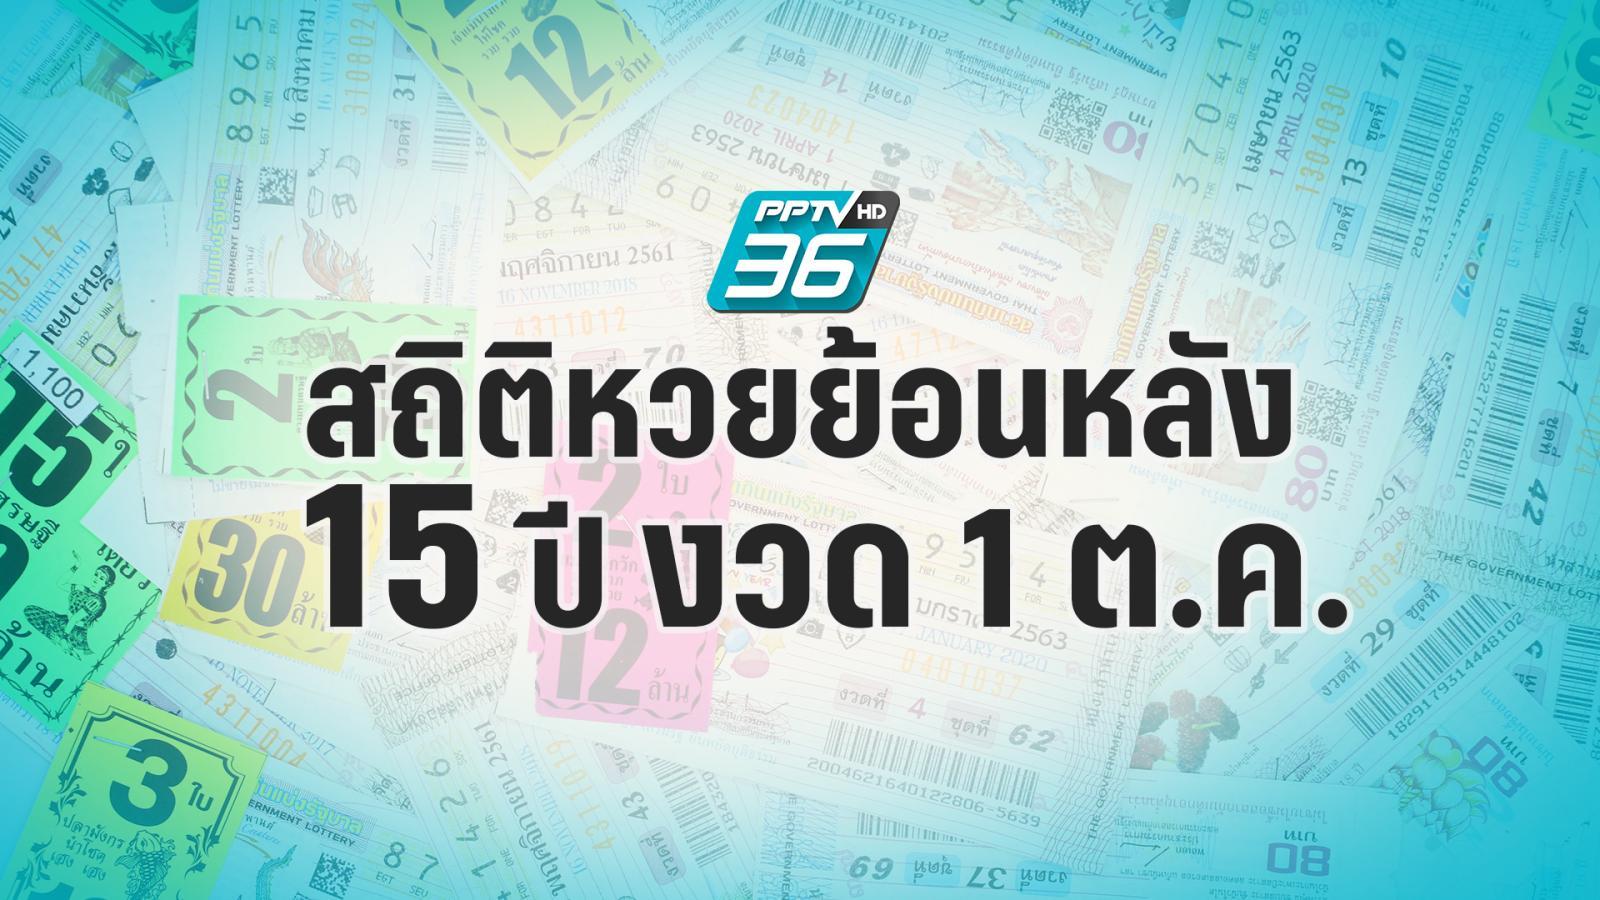 过去15年的公开彩票统计，10月1日期间：PPTVHD36